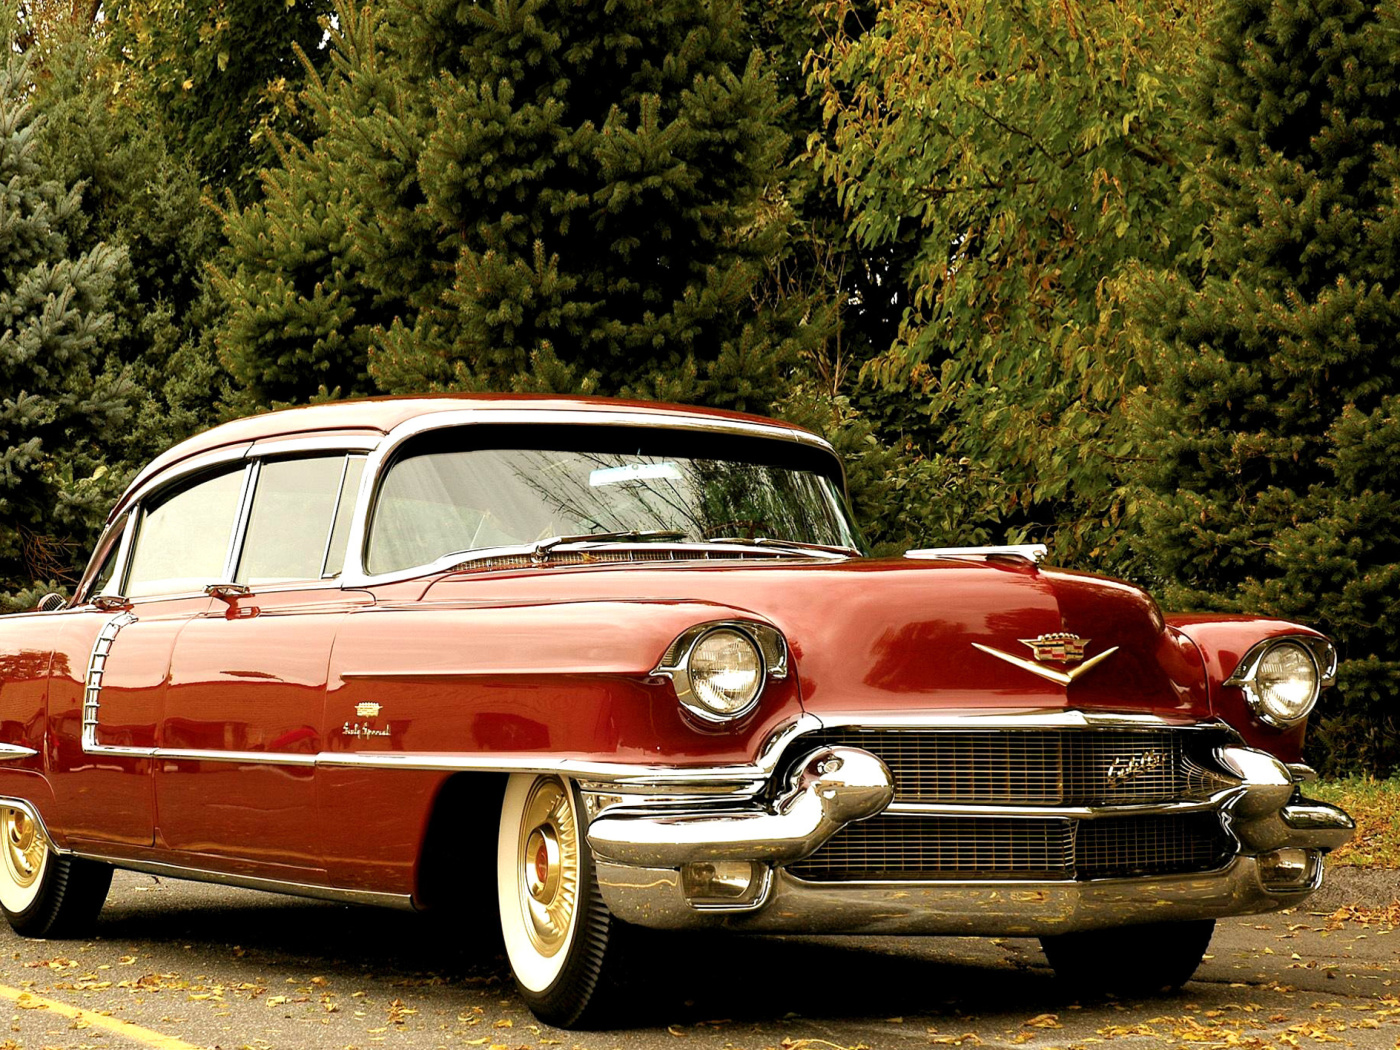 1956 Cadillac Maharani wallpaper 1400x1050